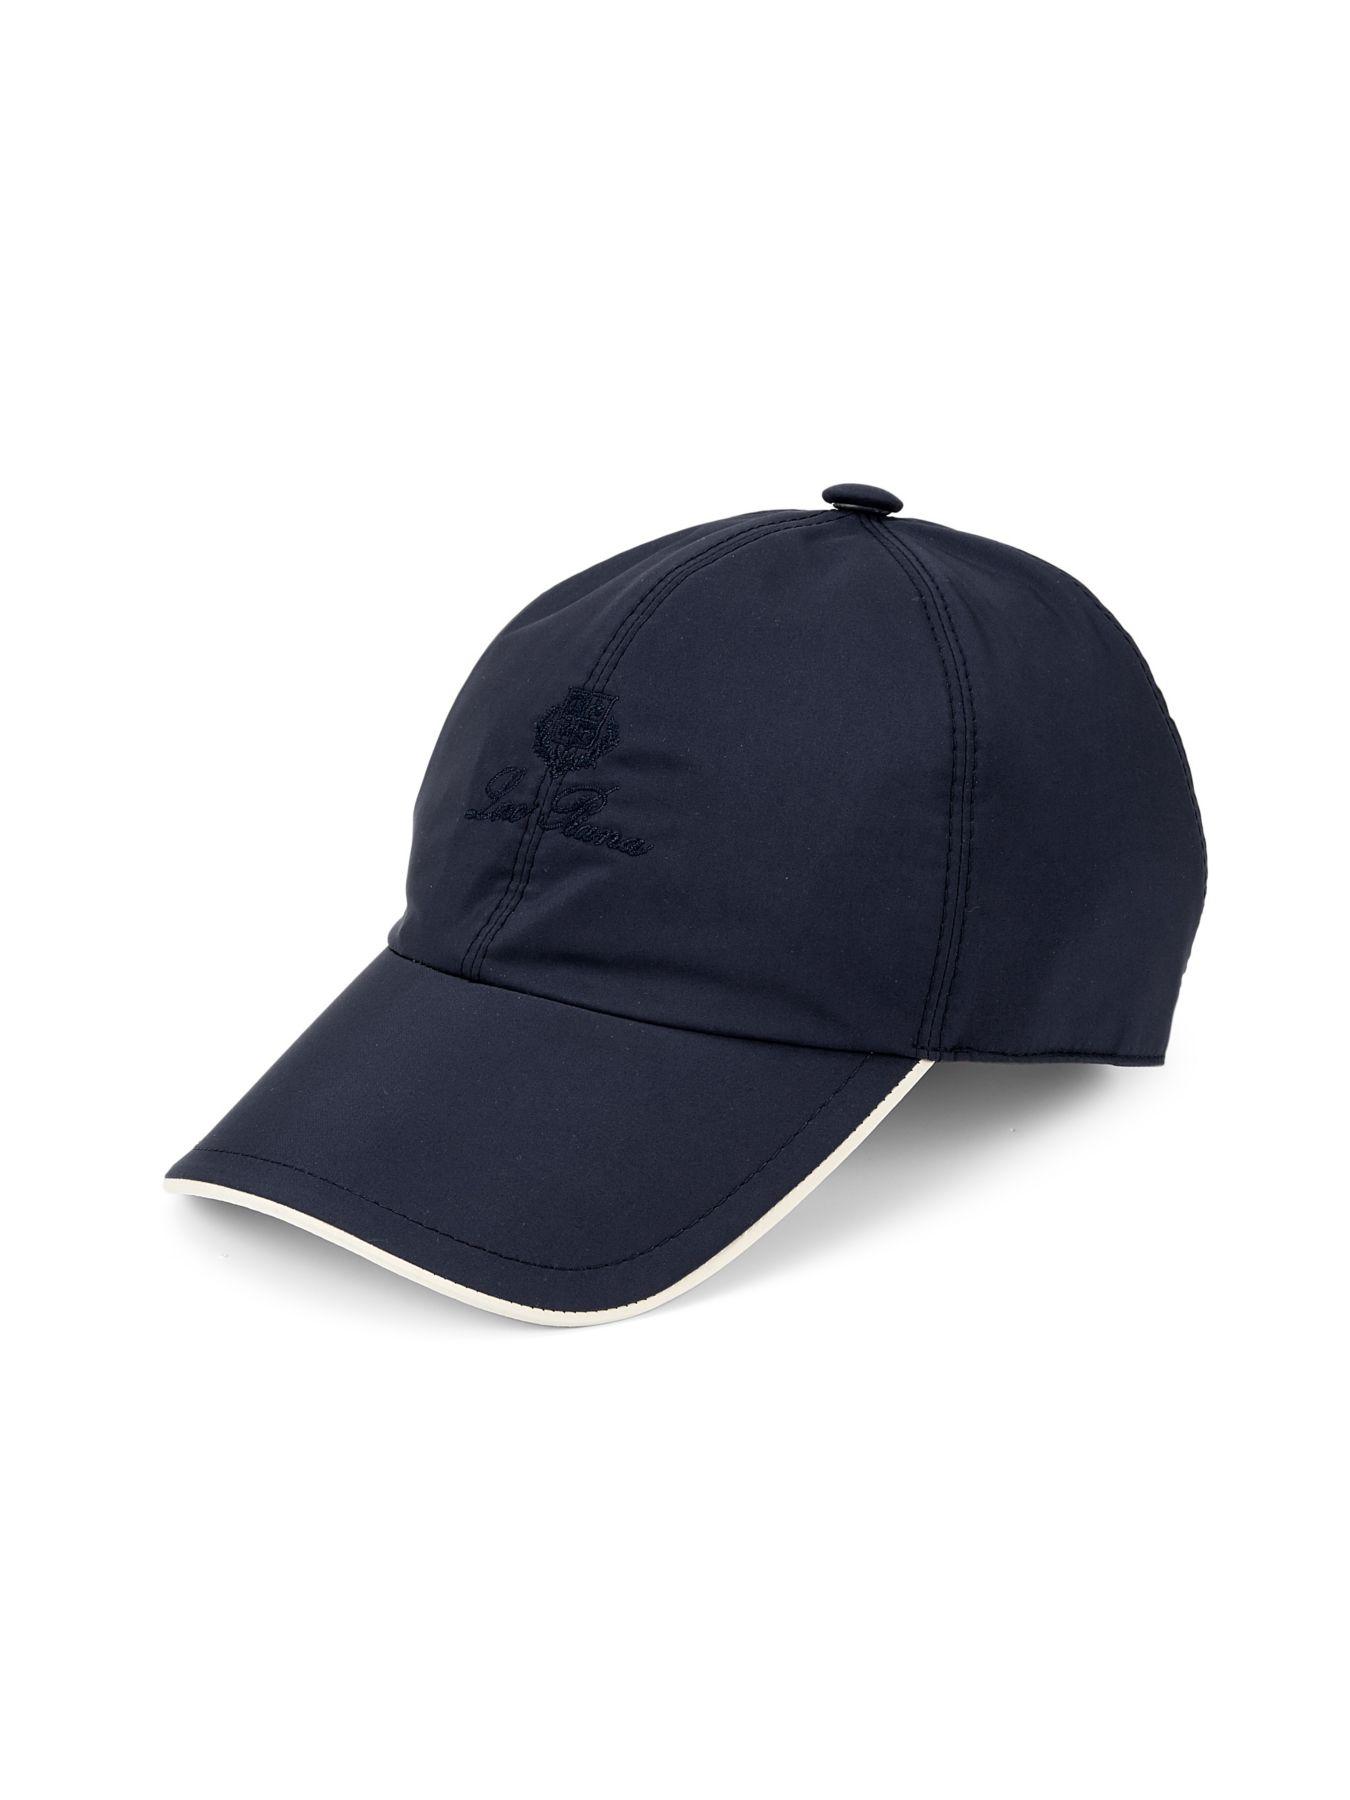 Loro Piana Wool Wind Baseball Hat in Dark Blue (Blue) for Men - Lyst